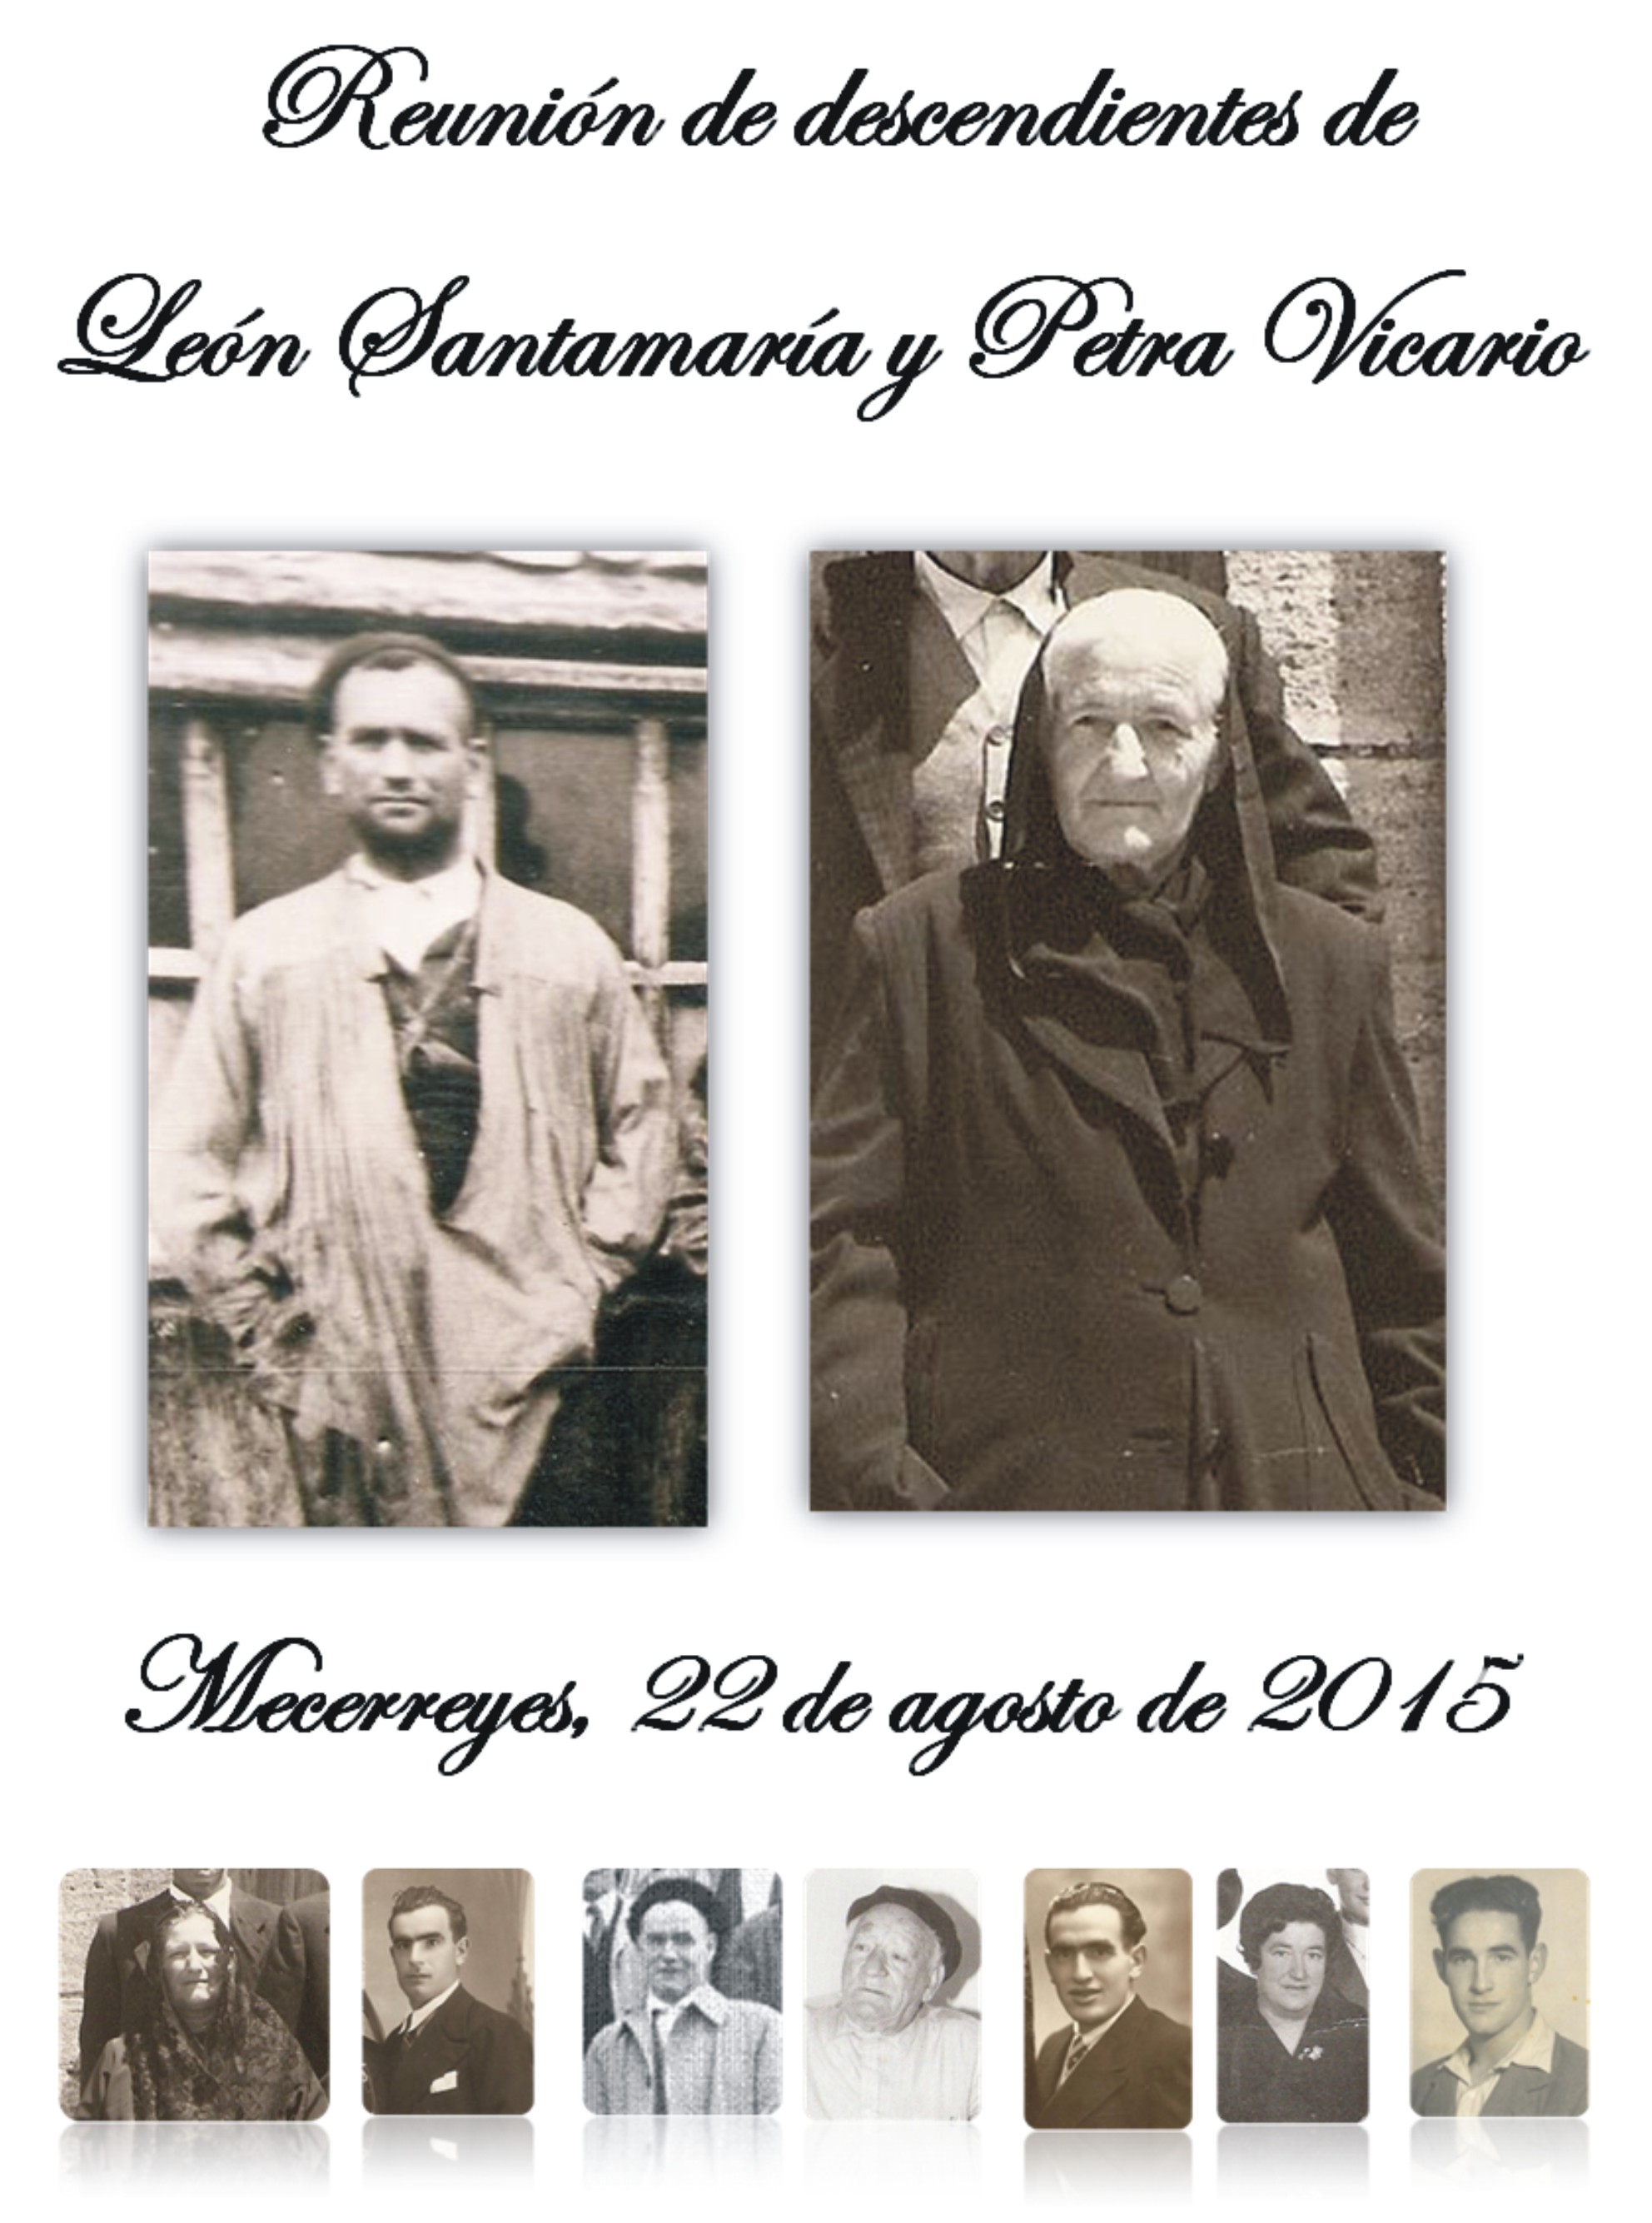 Encuentro de descendientes de León Santamaría y Petra Vicario, Mecerreyes 22-08-2015